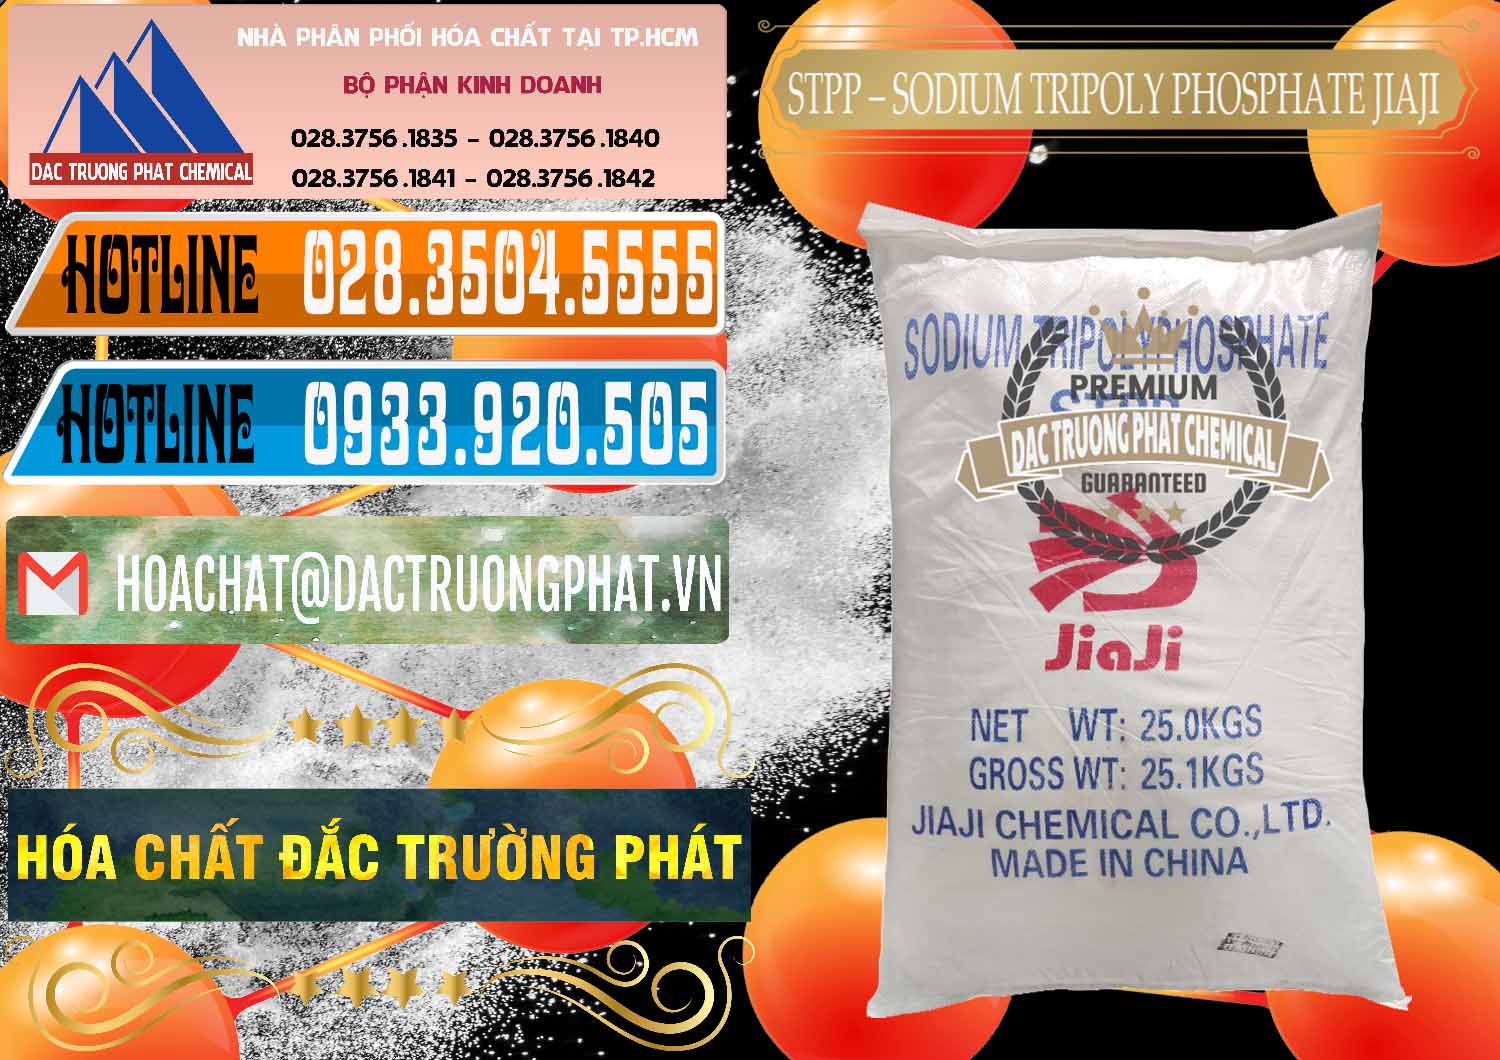 Đơn vị chuyên bán và cung cấp Sodium Tripoly Phosphate - STPP Jiaji Trung Quốc China - 0154 - Công ty cung cấp _ bán hóa chất tại TP.HCM - stmp.net